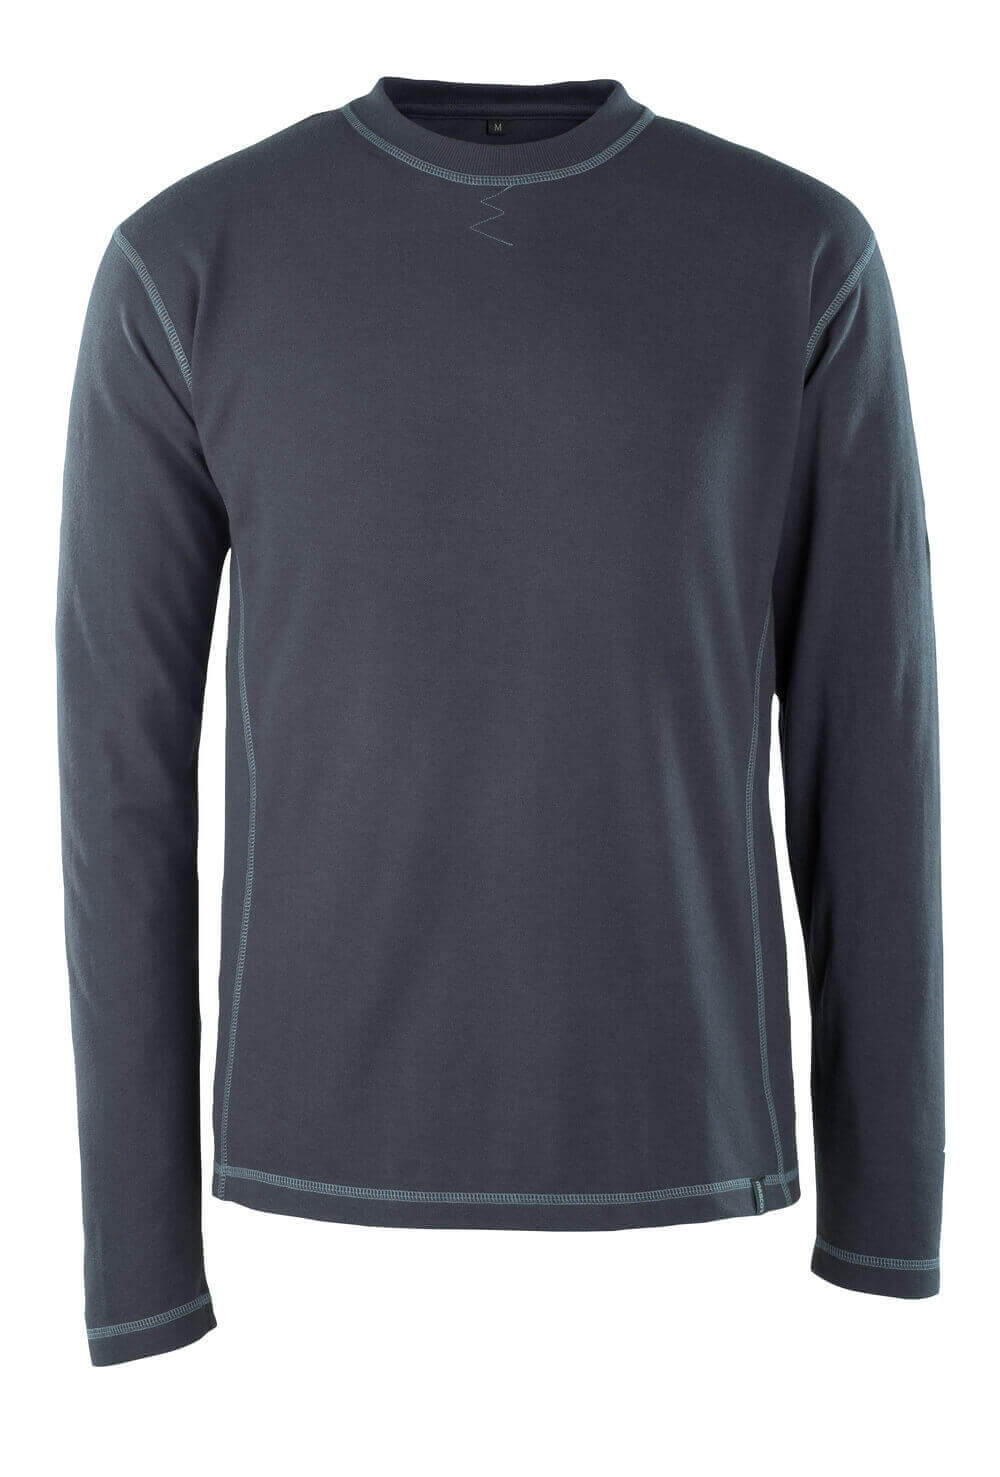 MASCOT® MULTISAFE T-Shirt, Langarm »Muri« Gr. 2XL, schwarzblau - kommt direkt von HUG Technik 😊